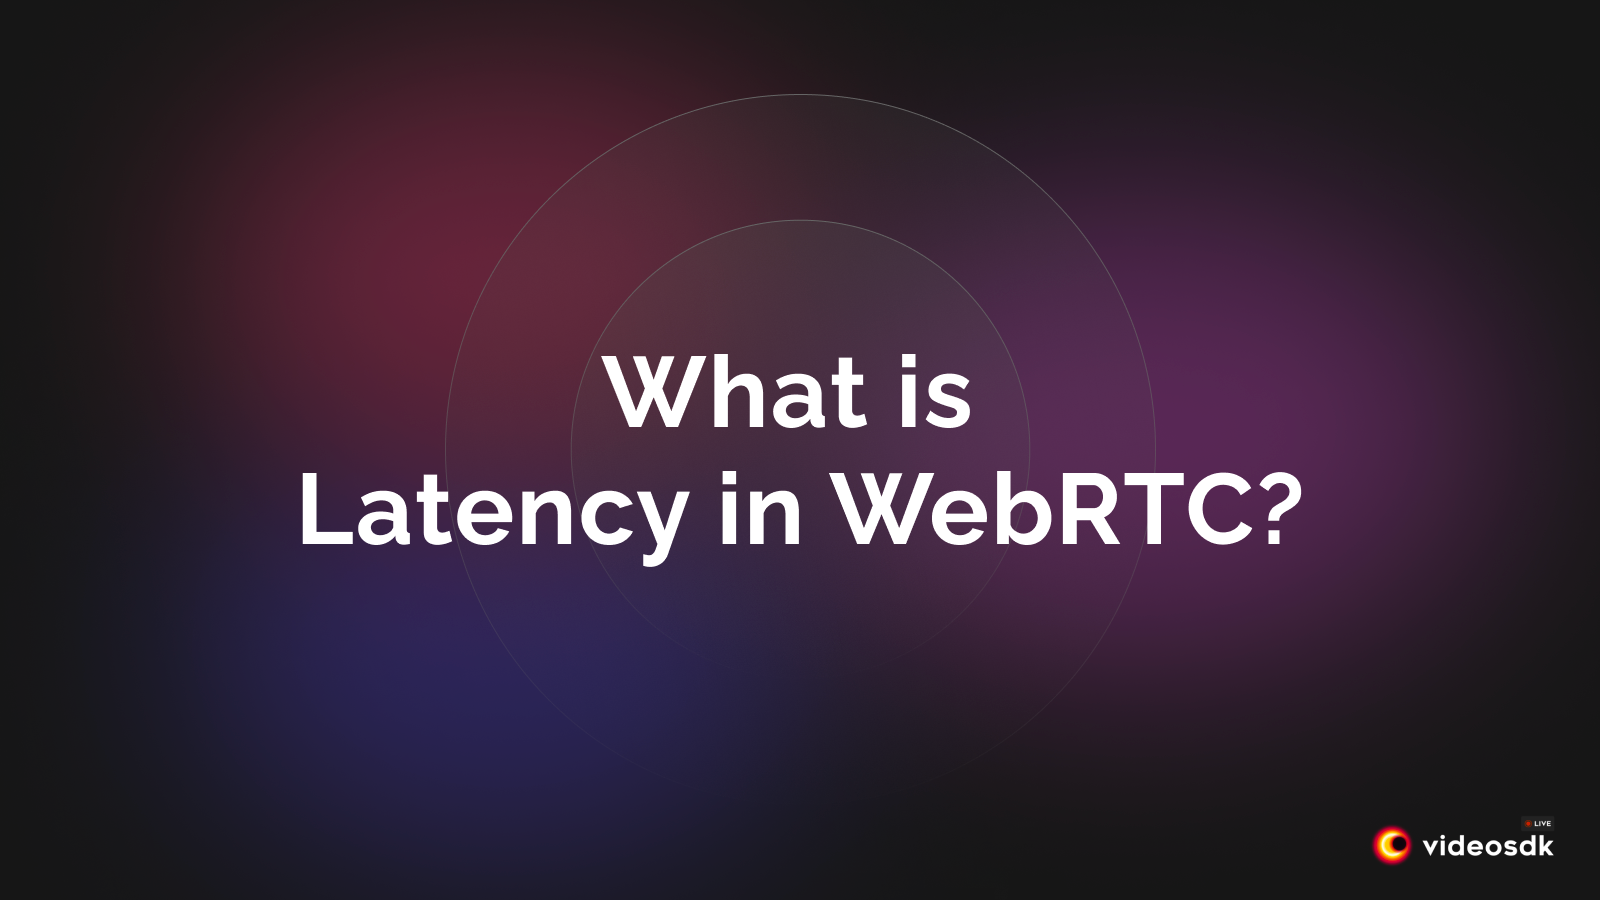 What is Latency in WebRTC? How can VideoSDK Fix Latency?